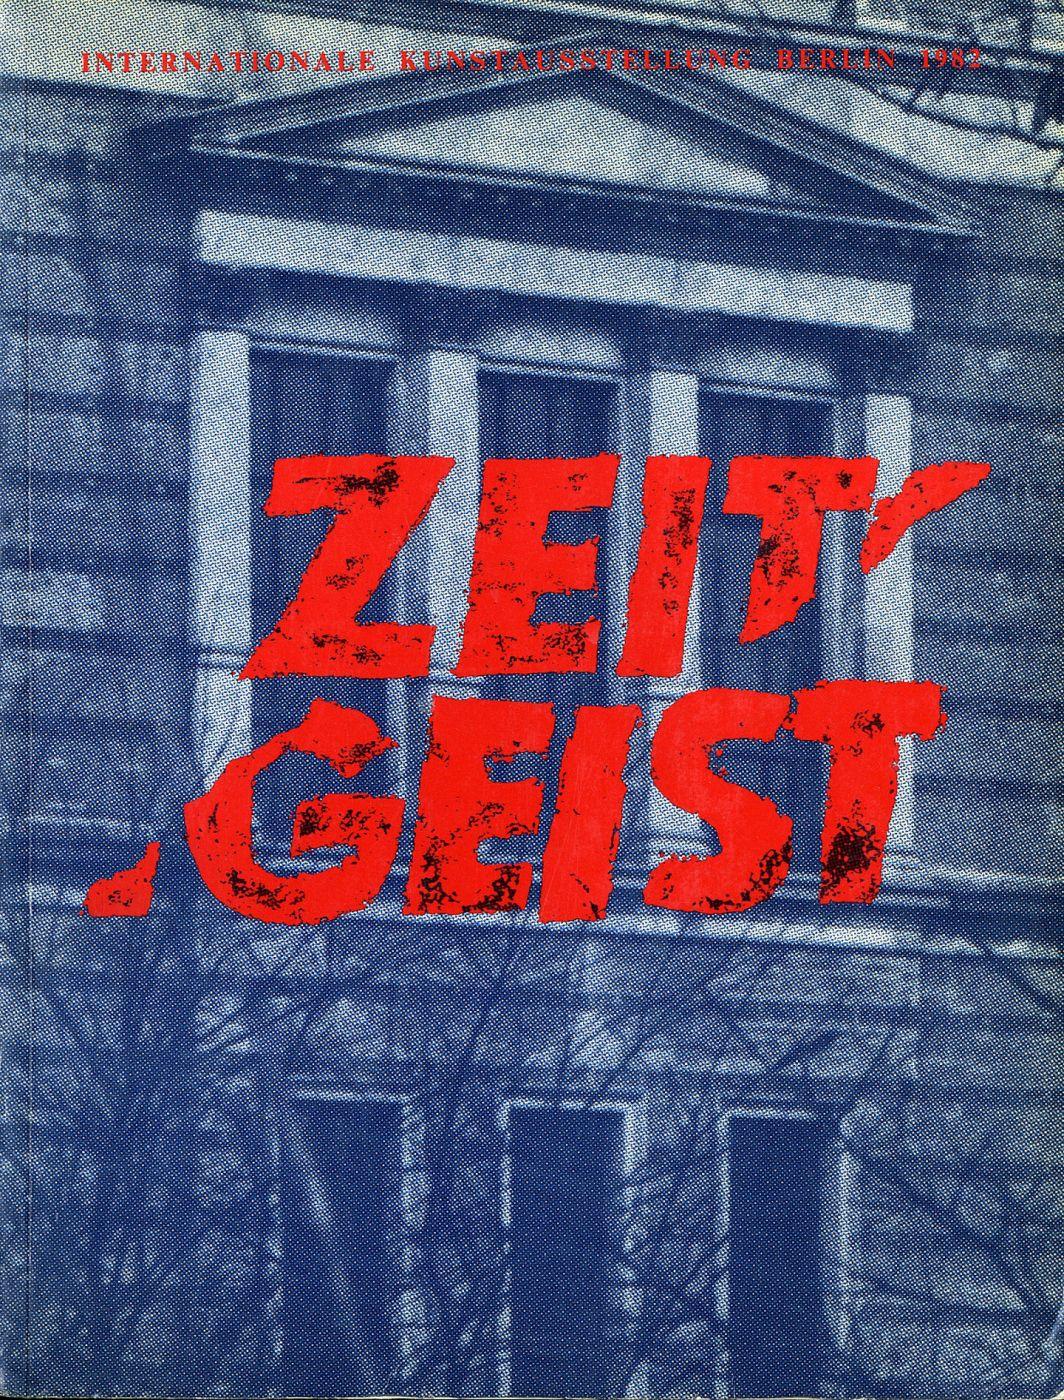 Zeitgeist: Internationale Kunstausstellung, Berlin, 1982